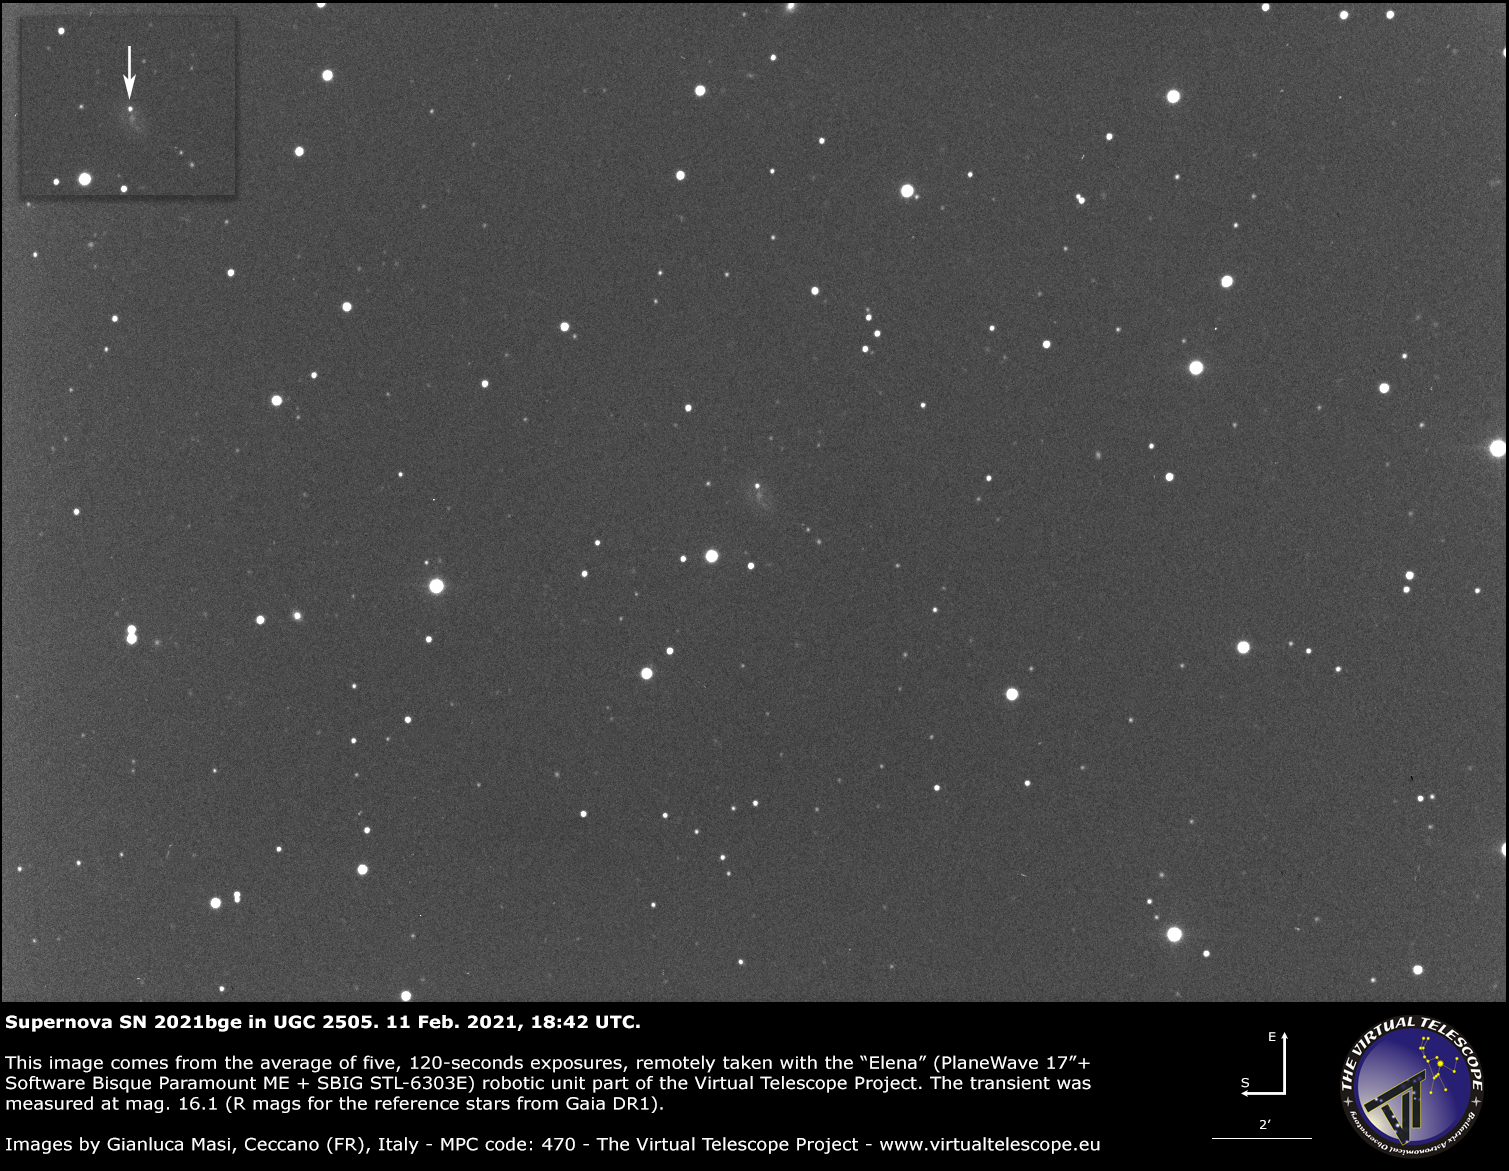 Supernova SN 2021bge in UGC 2505: 11 Feb. 2021